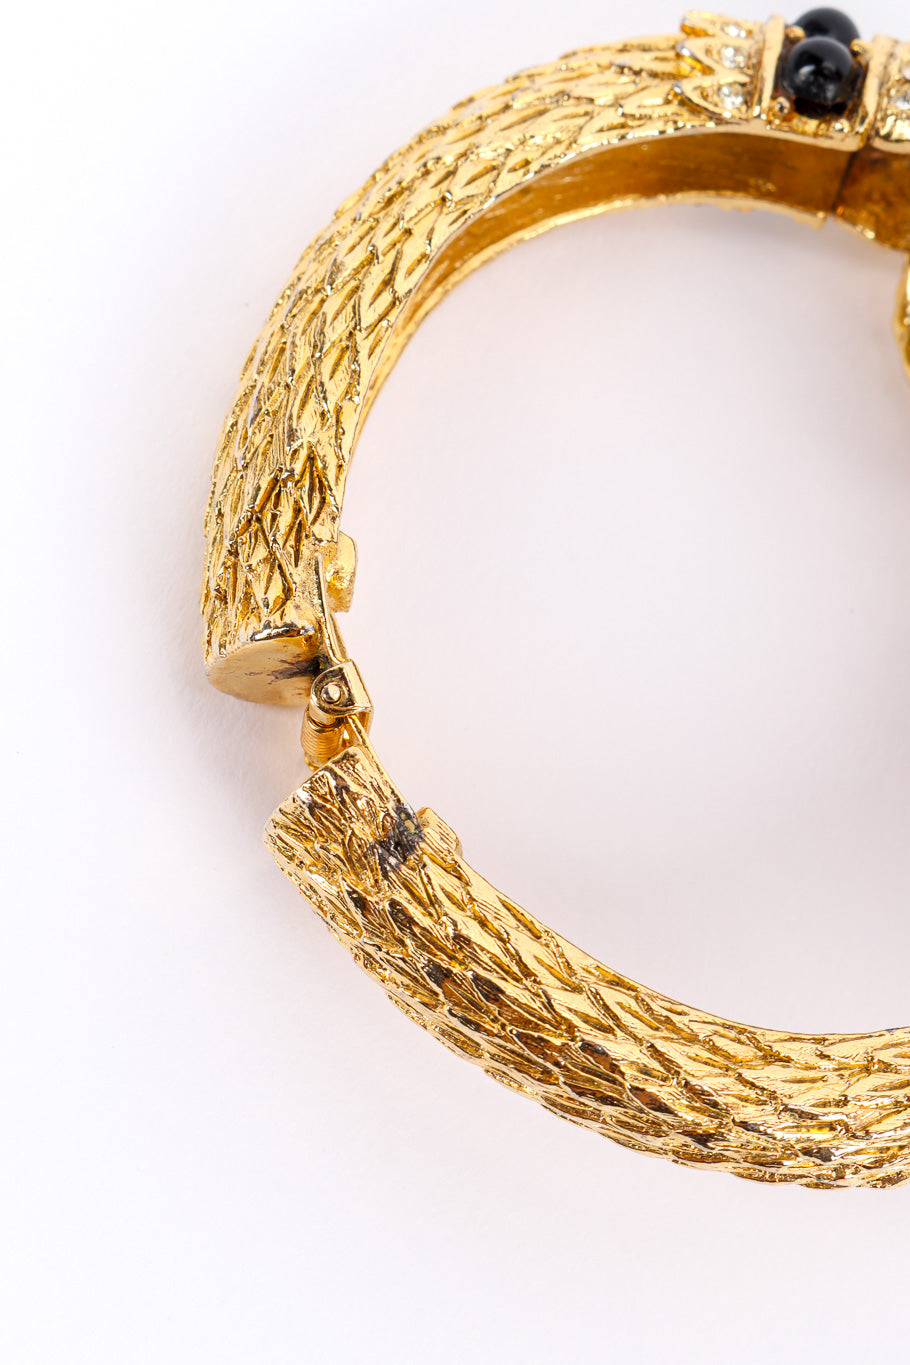 Vintage Craft Jeweled Ram Bracelet hinge side view @recessla